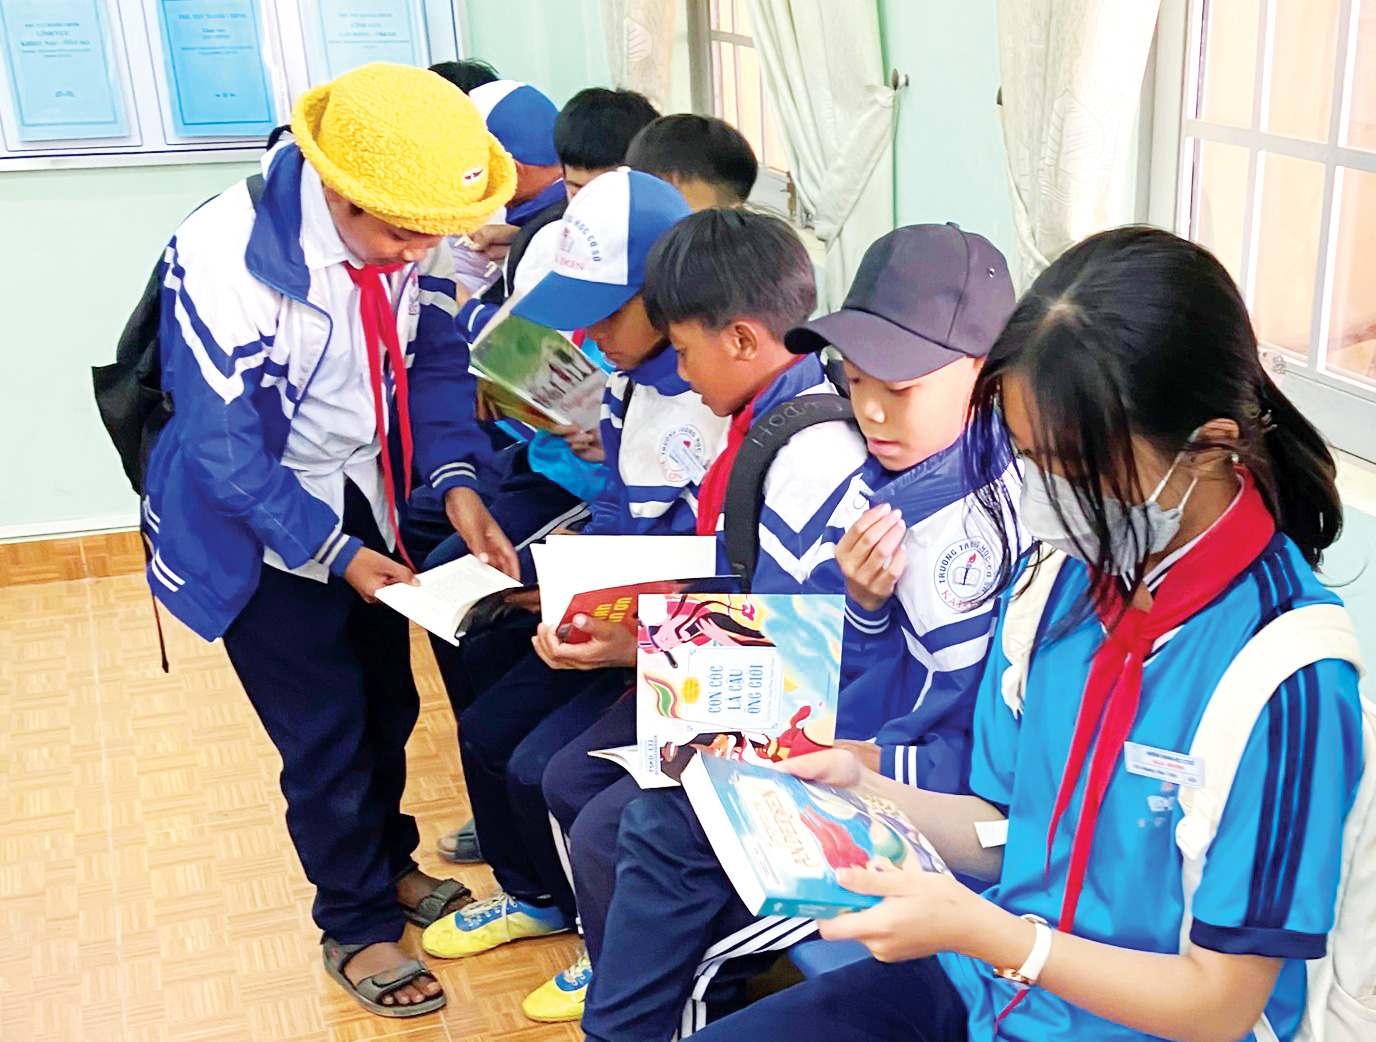 Lâm Đồng: Xây dựng tủ sách cộng đồng, phát triển văn hóa đọc ở vùng đồng bào DTTS - Ảnh 1.